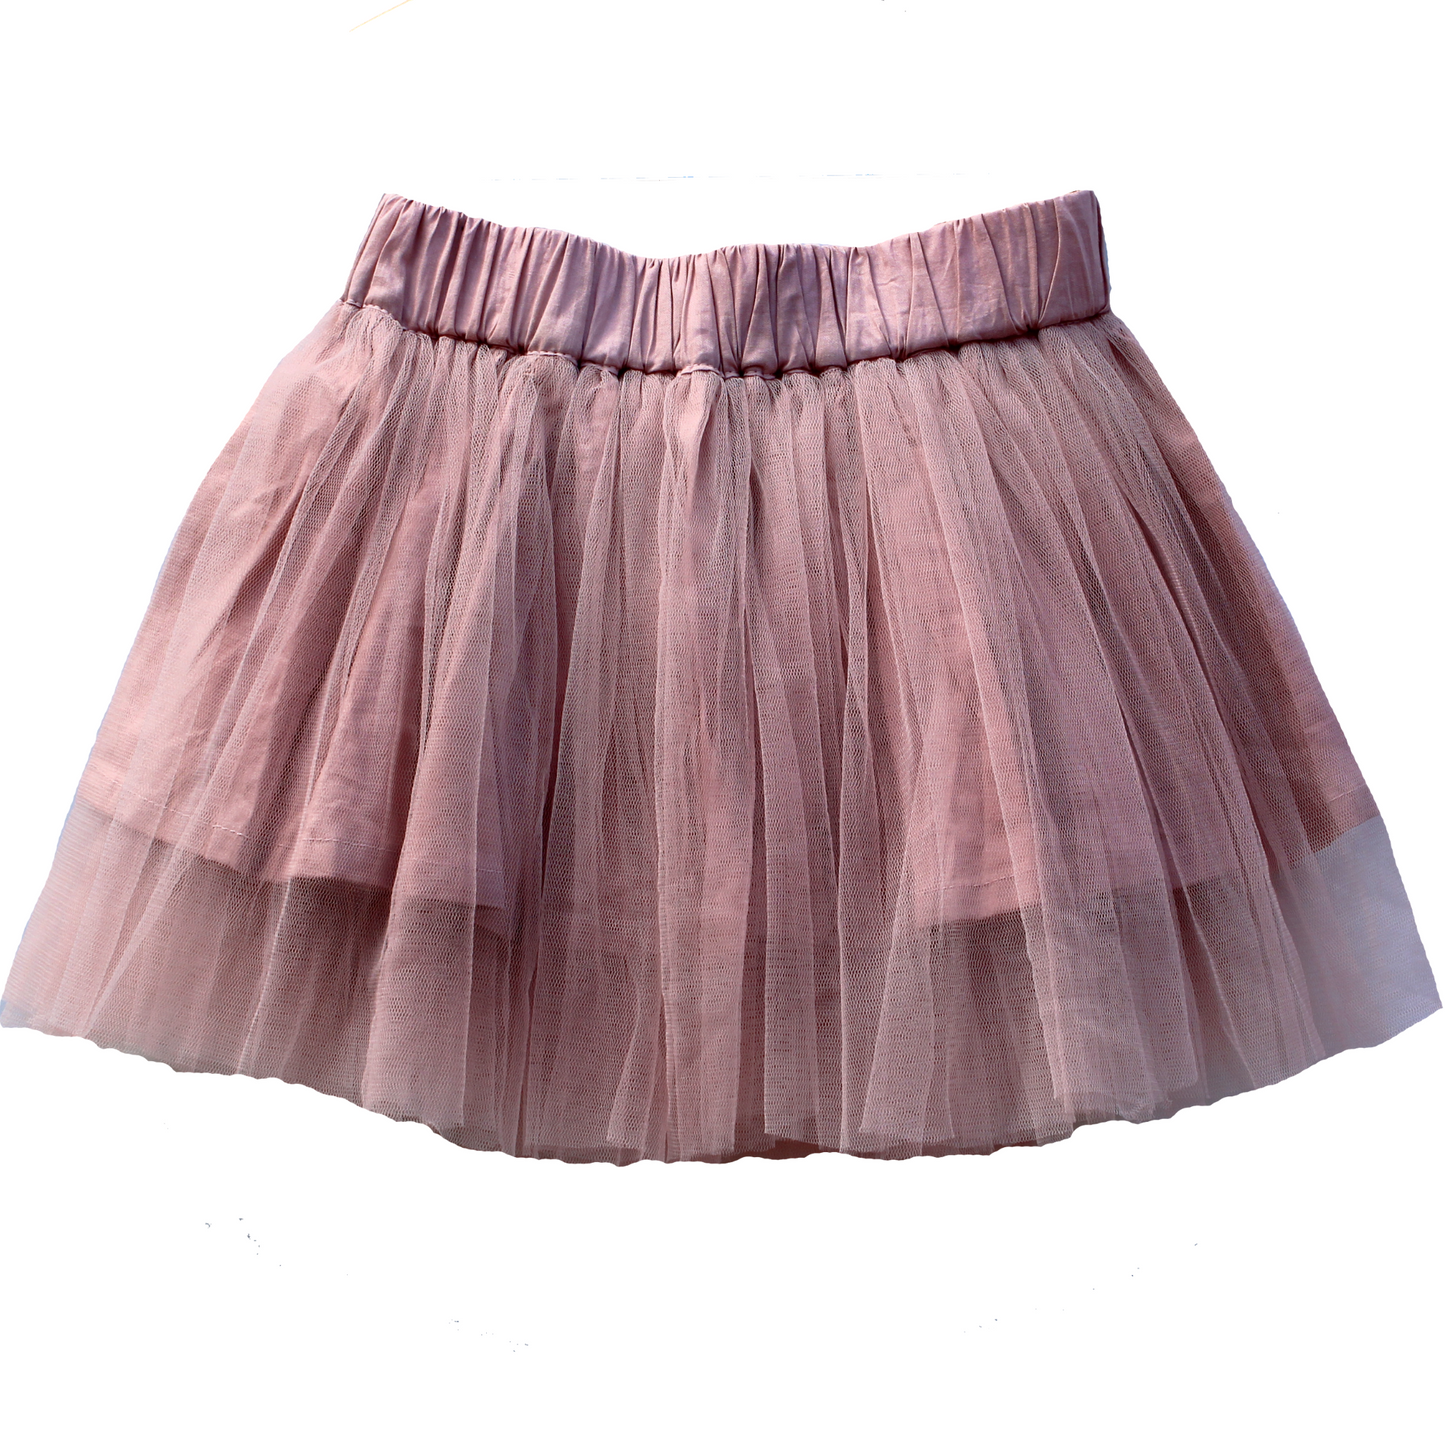 DUKES + DUCHESSES APPAREL - Musk Pink Tulle Skirt